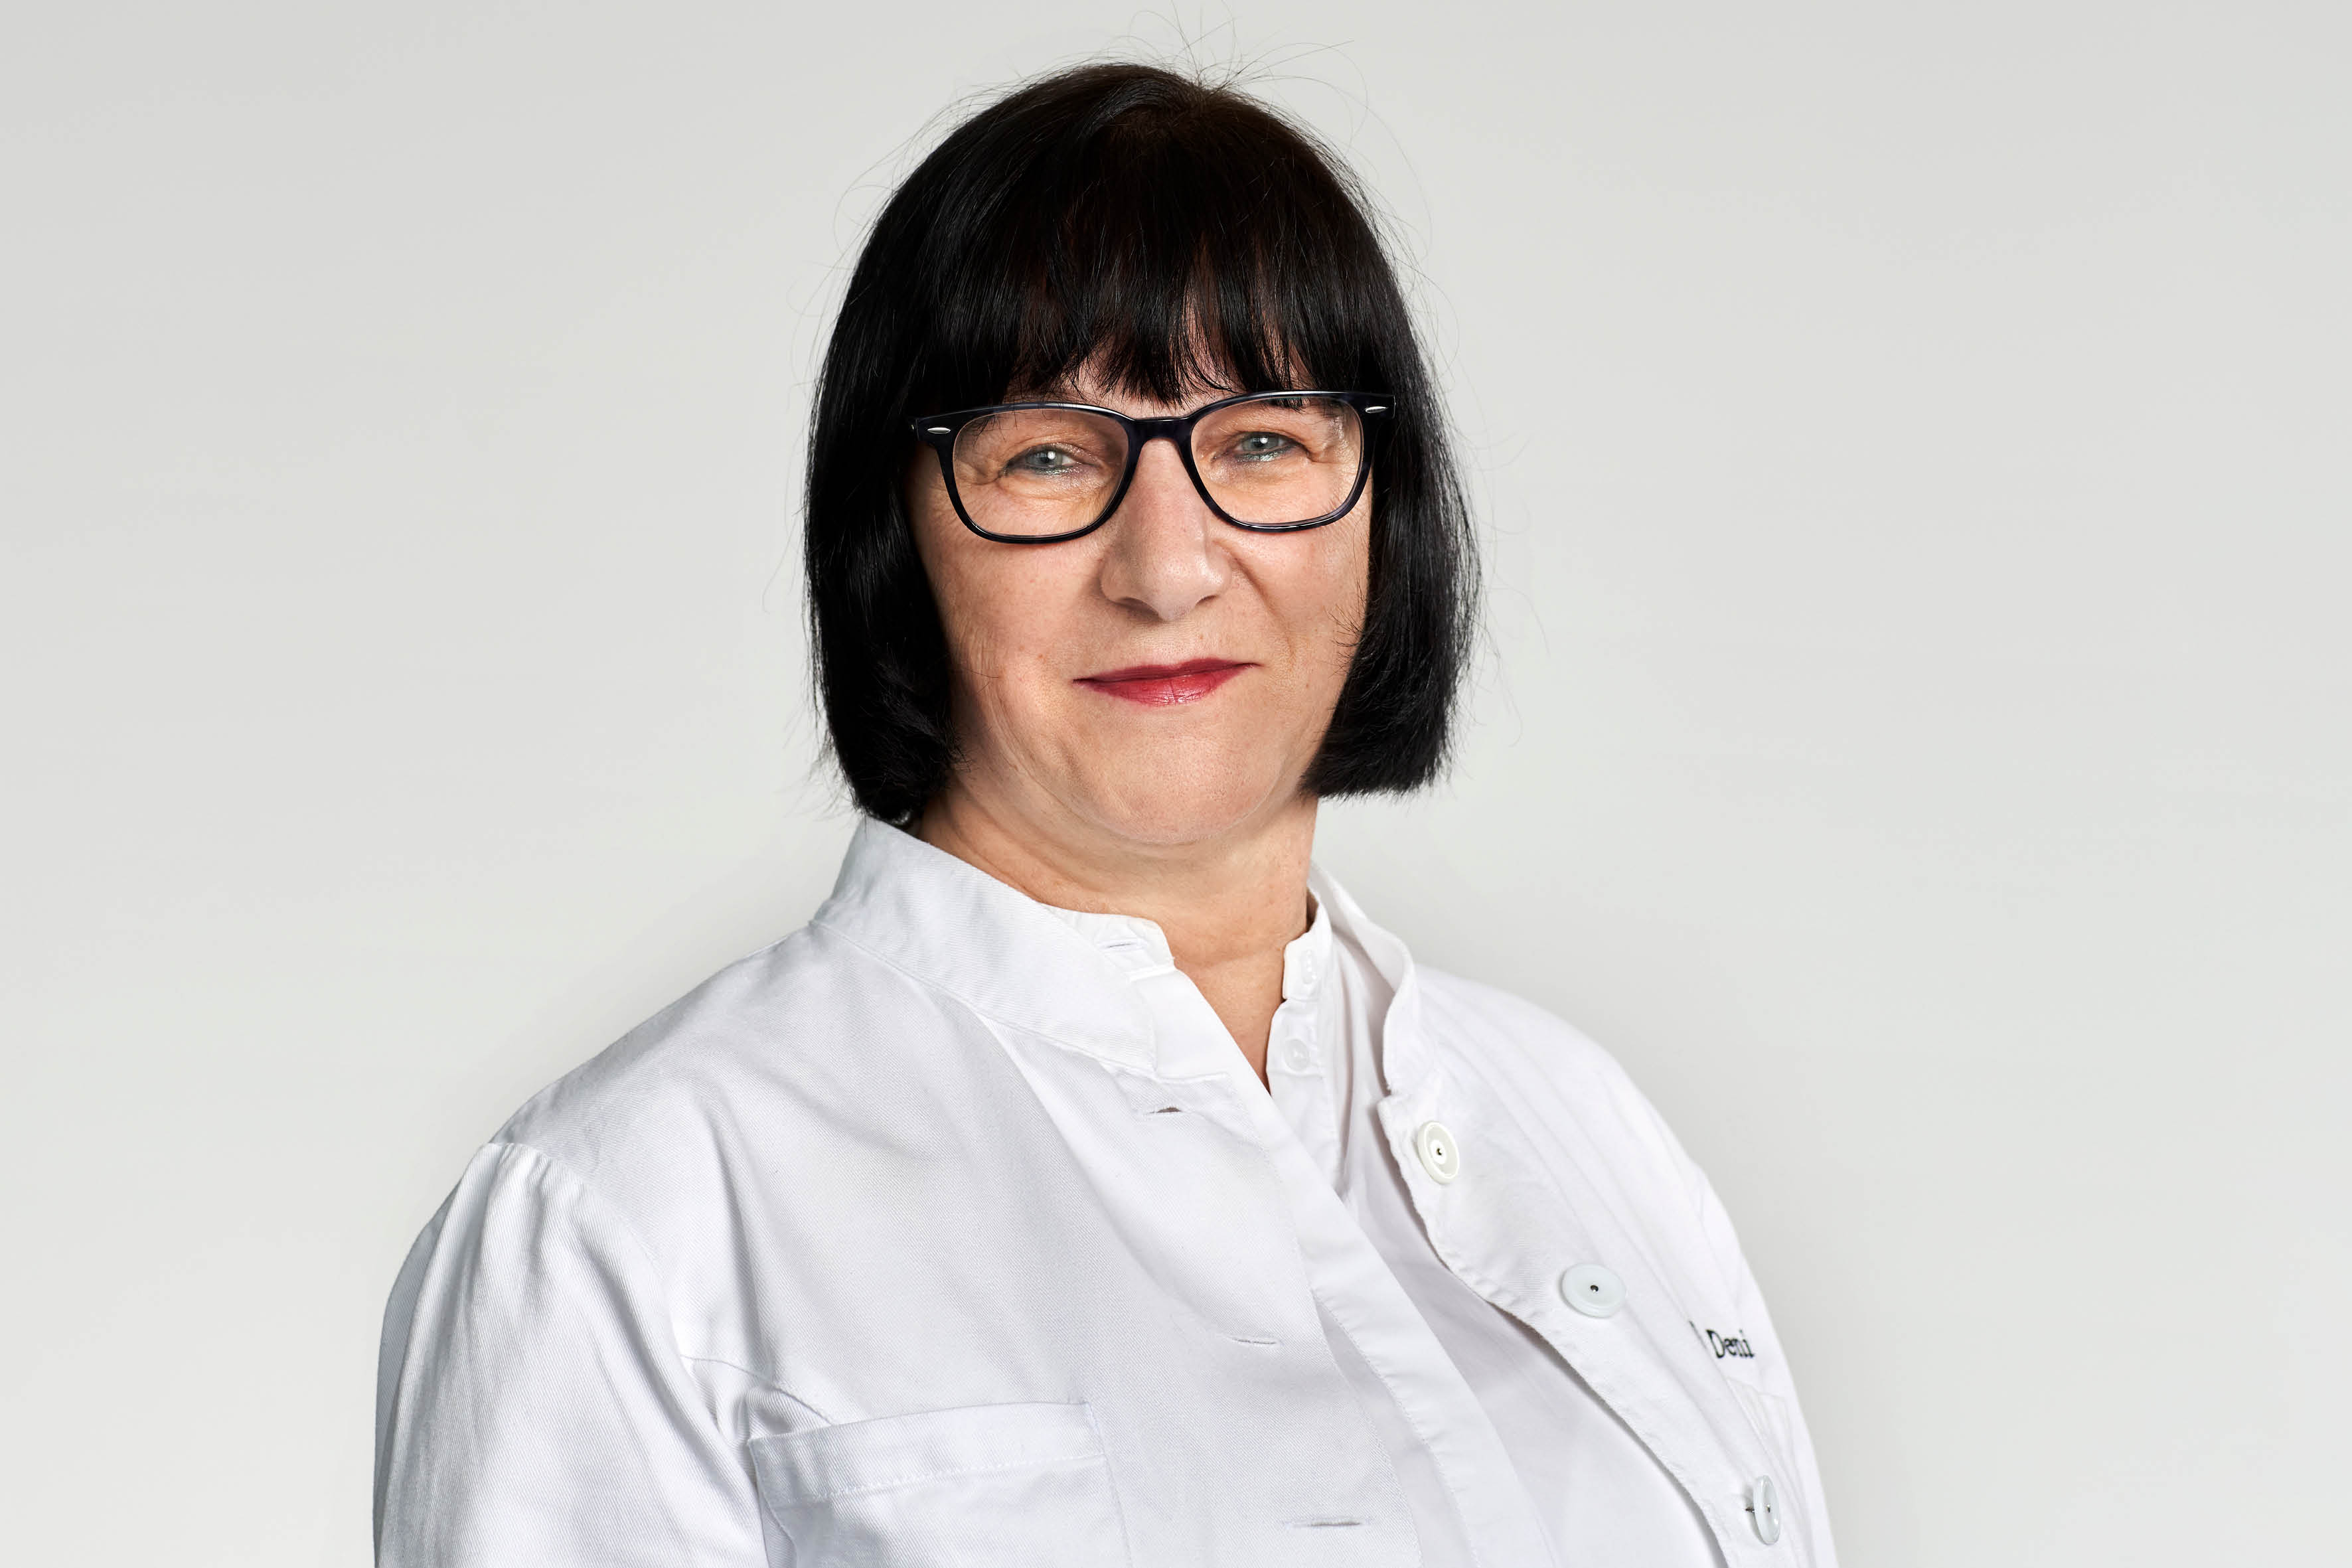 Susanne Denizot - Fachärztin für Allgemeinmedizin und Innere Medizin / Allgemeinmedizinerin & Internistin - Ärztin der Praxisklinik Bornheim bei Köln-Bonn